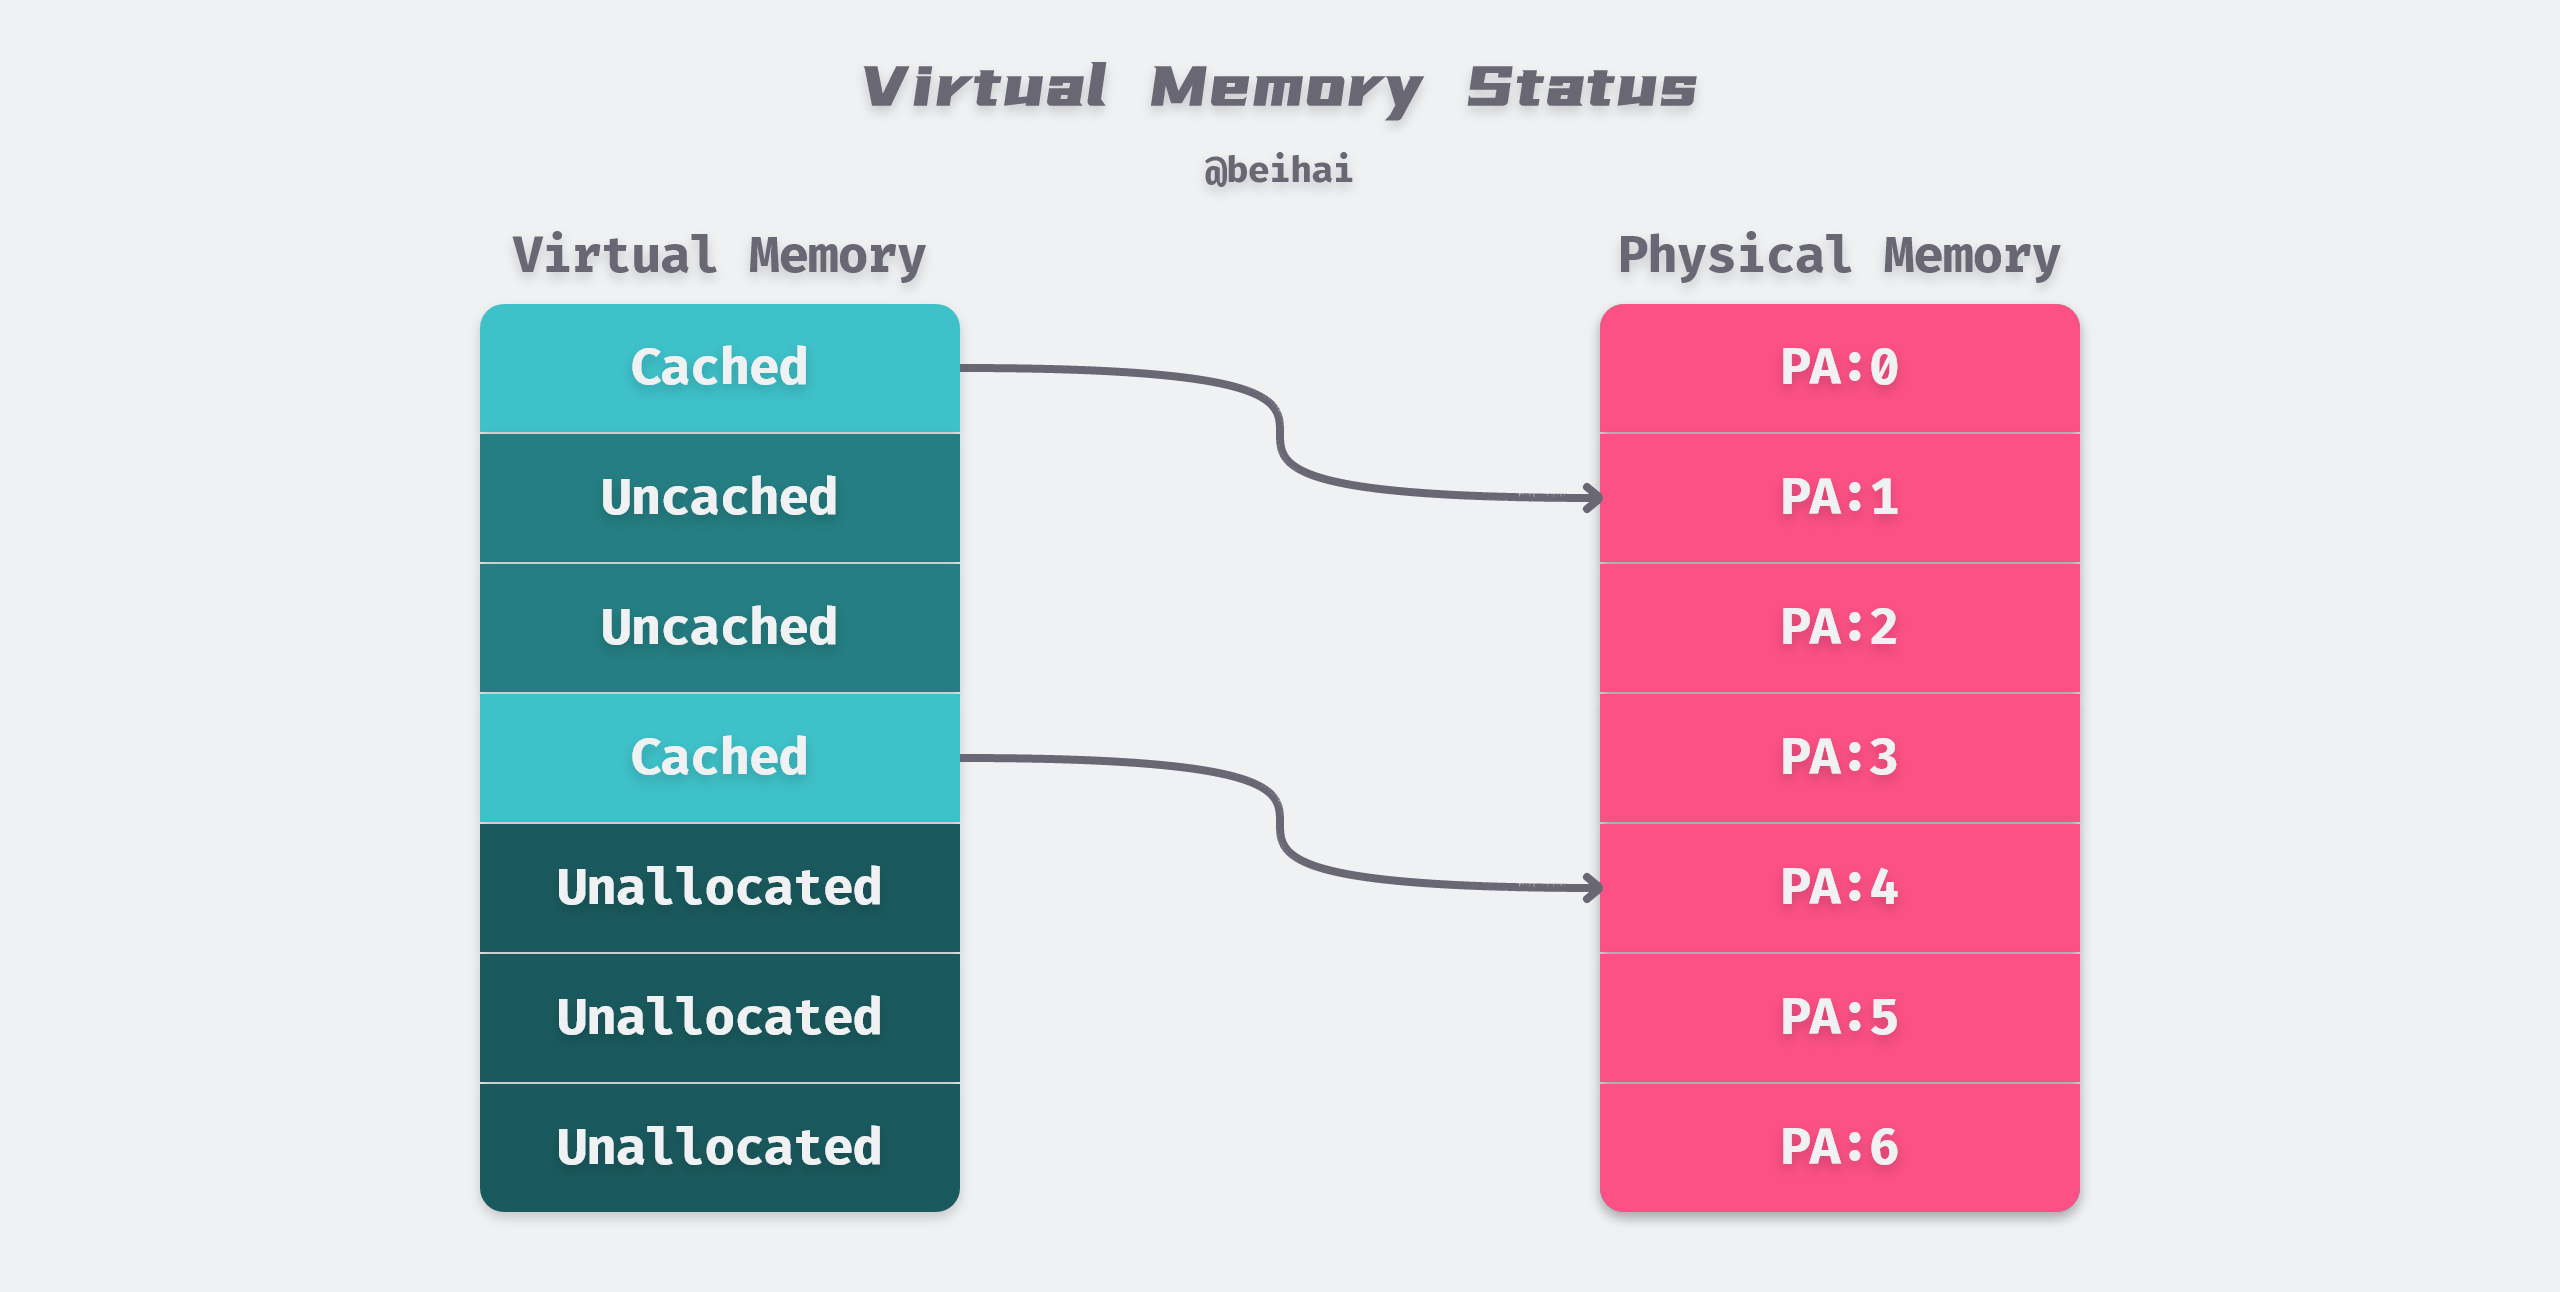 Virtual memory status